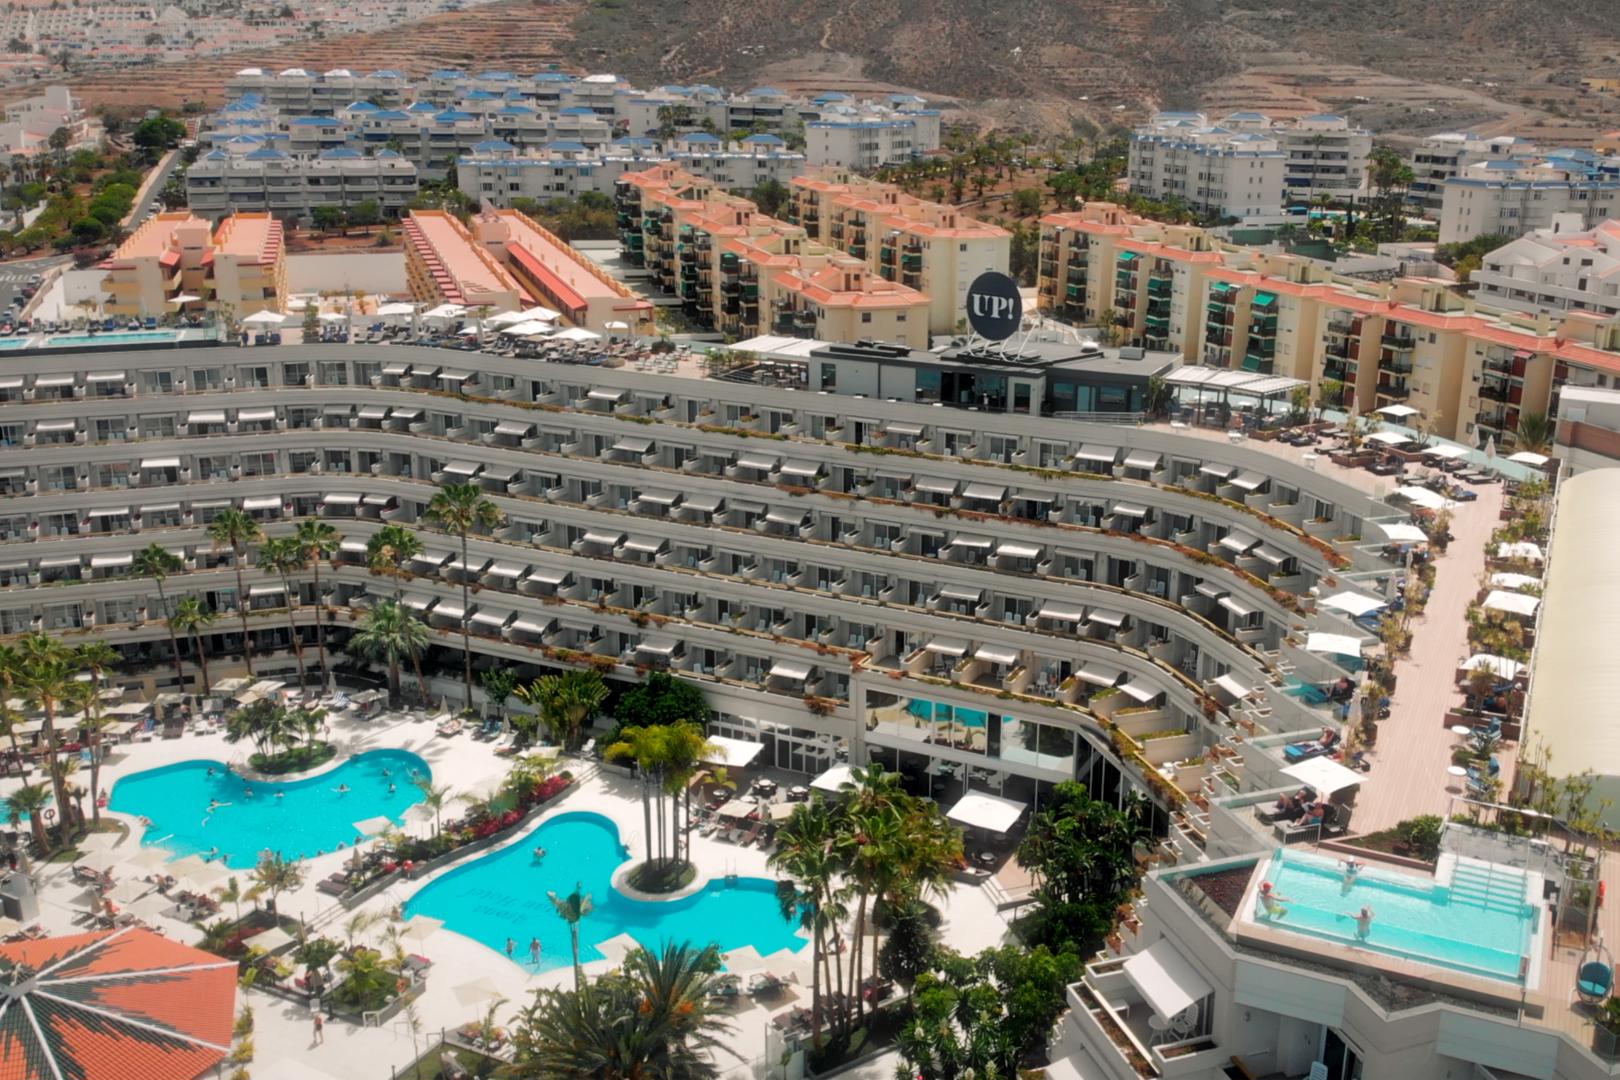 Spring Arona Gran Hotel en Spa - Los Cristianos - Canarische Eilanden